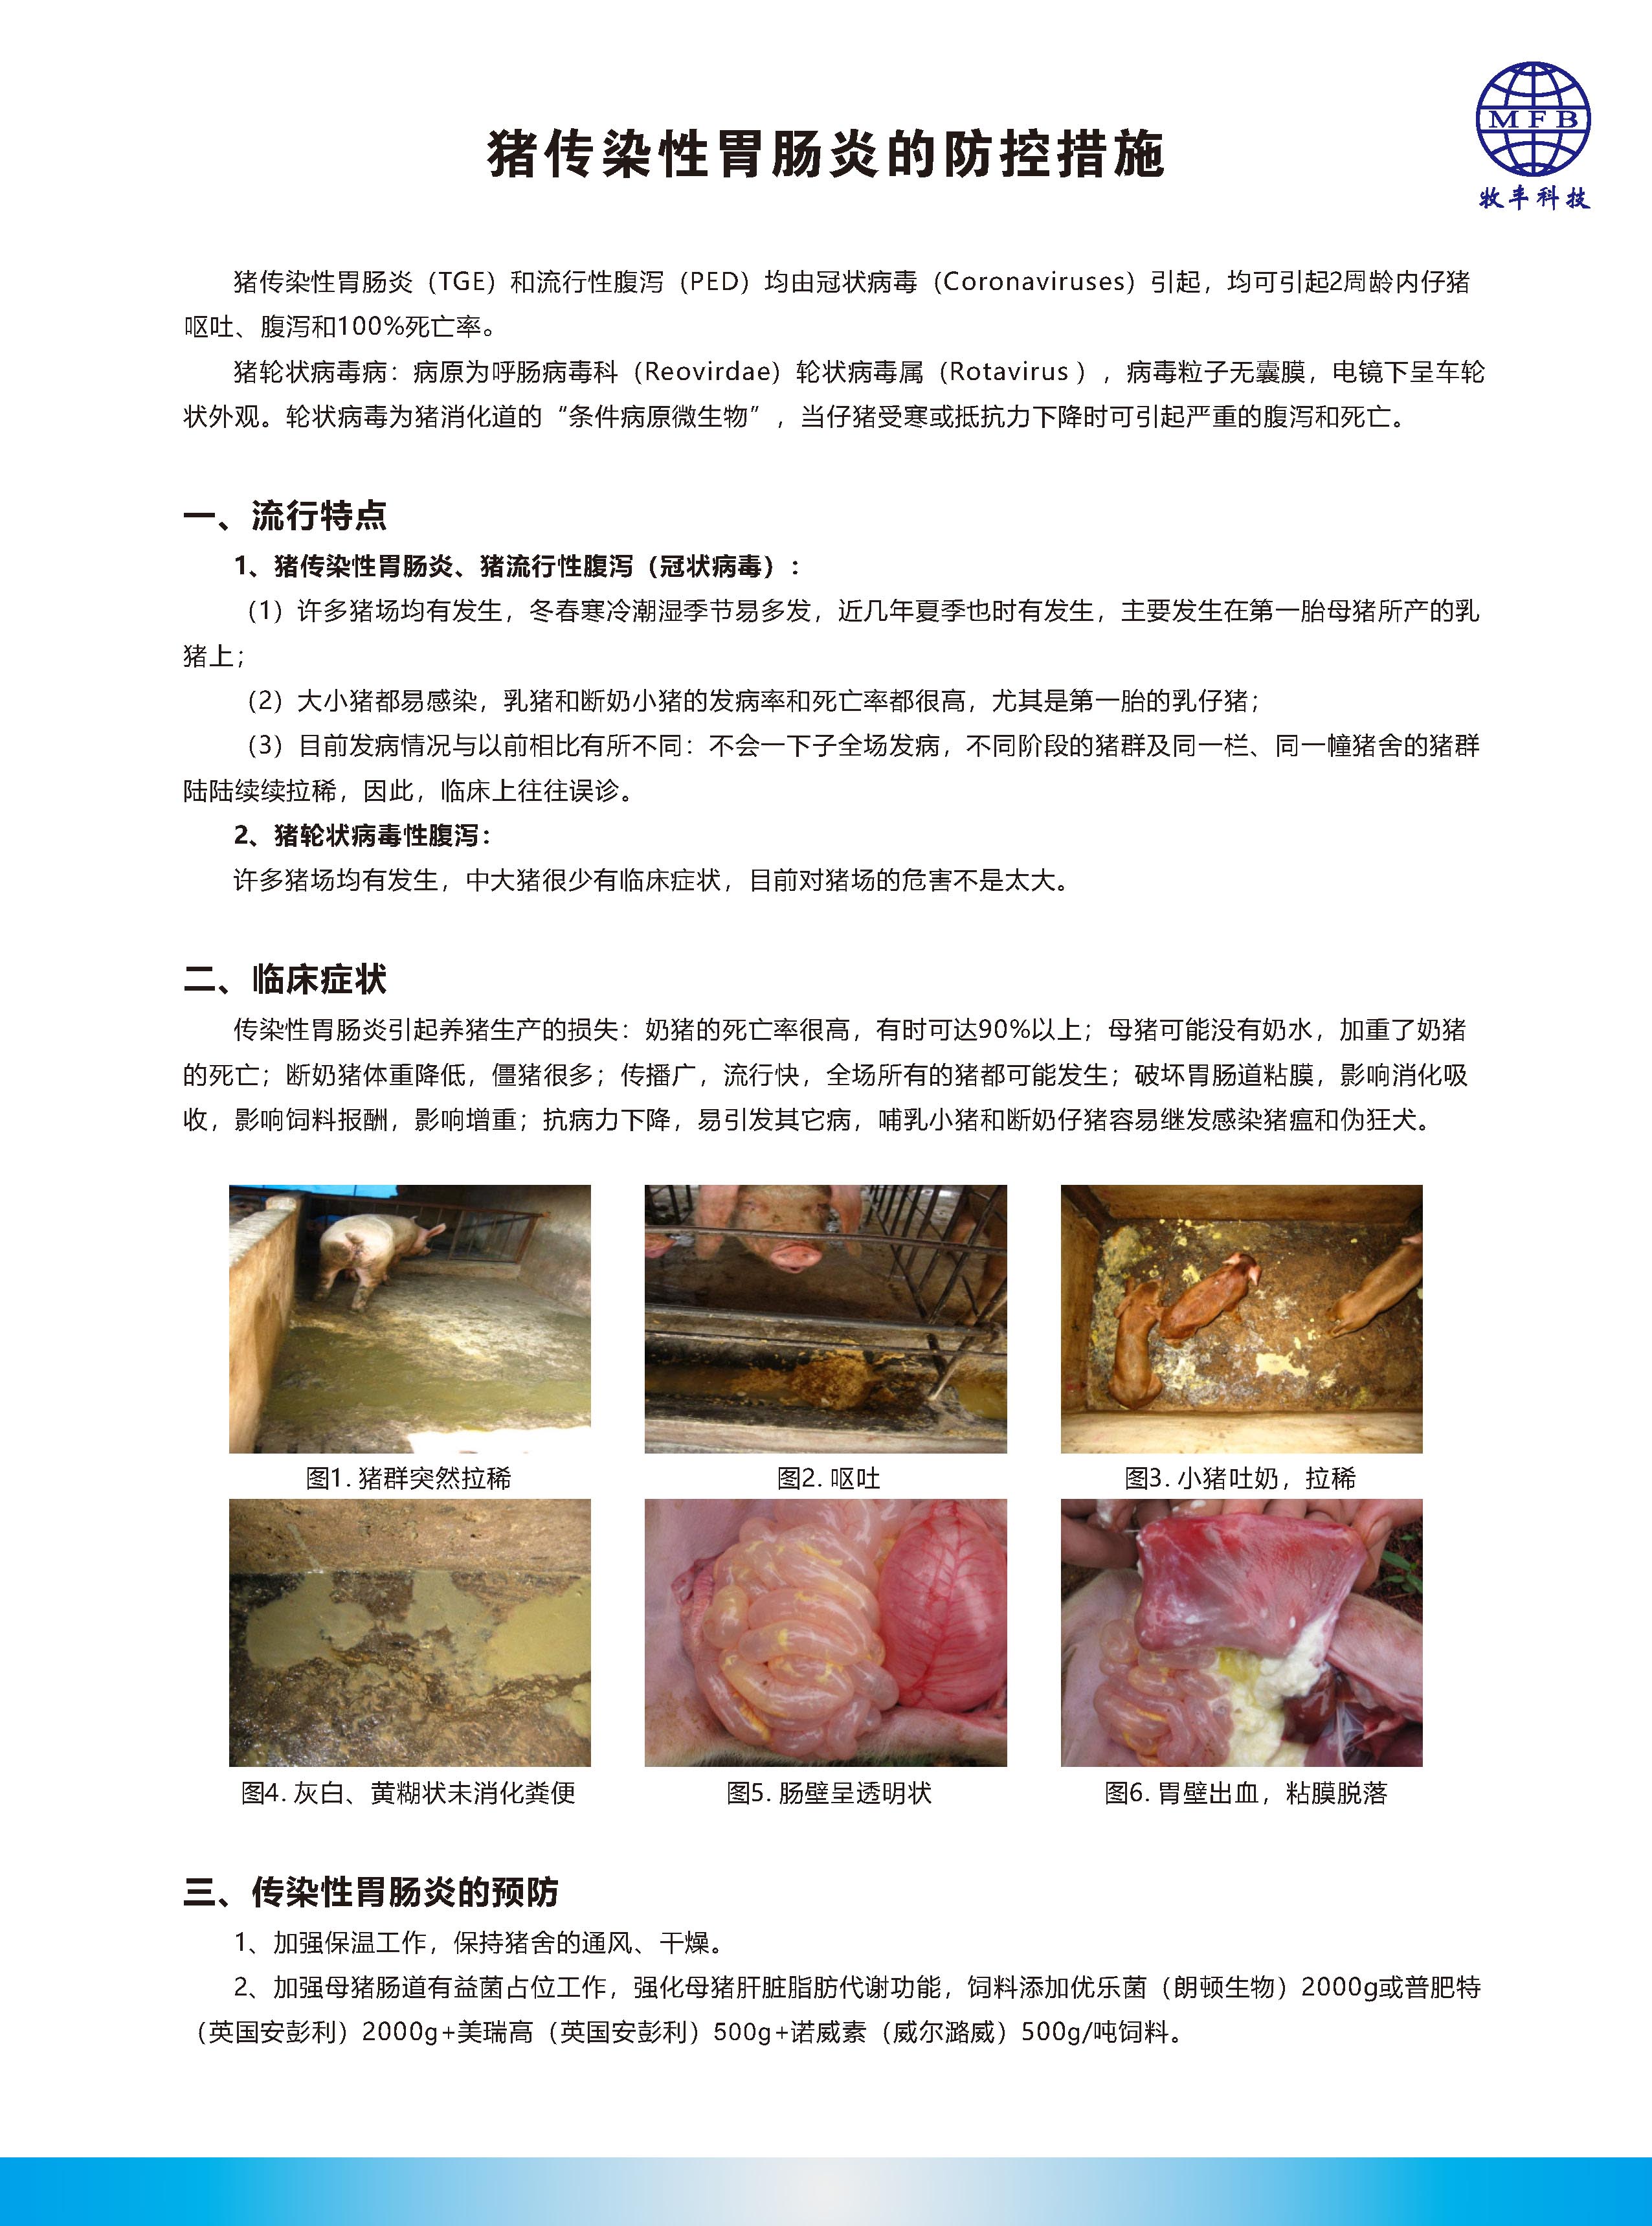 猪传染性胃肠炎的防控措施_页面_1.jpg